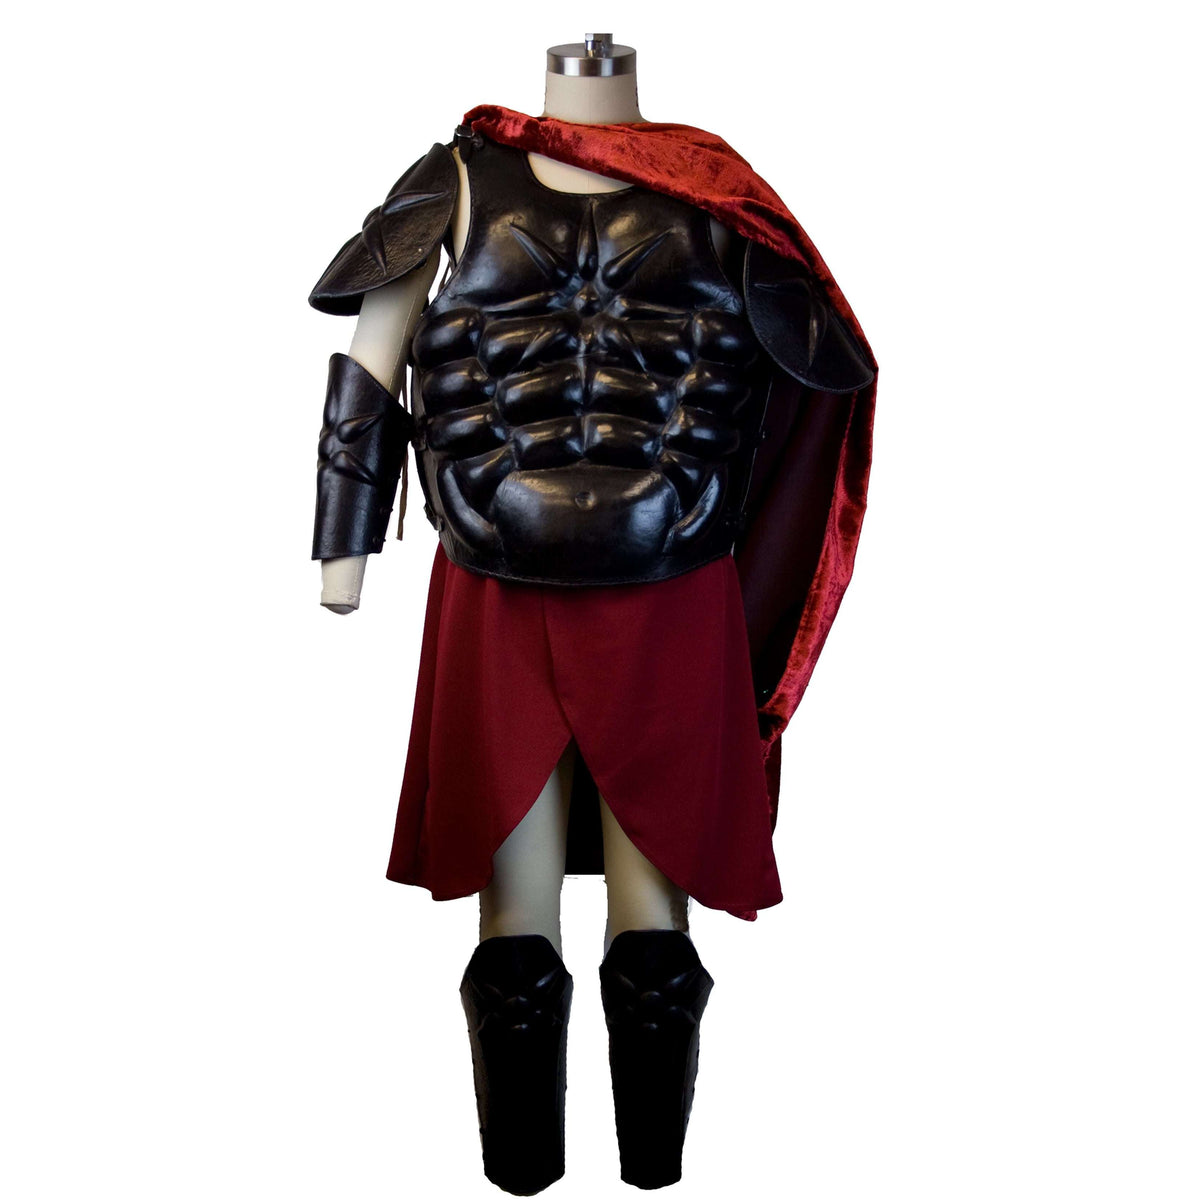 Black Sun Leader Gladiator Adult Costume